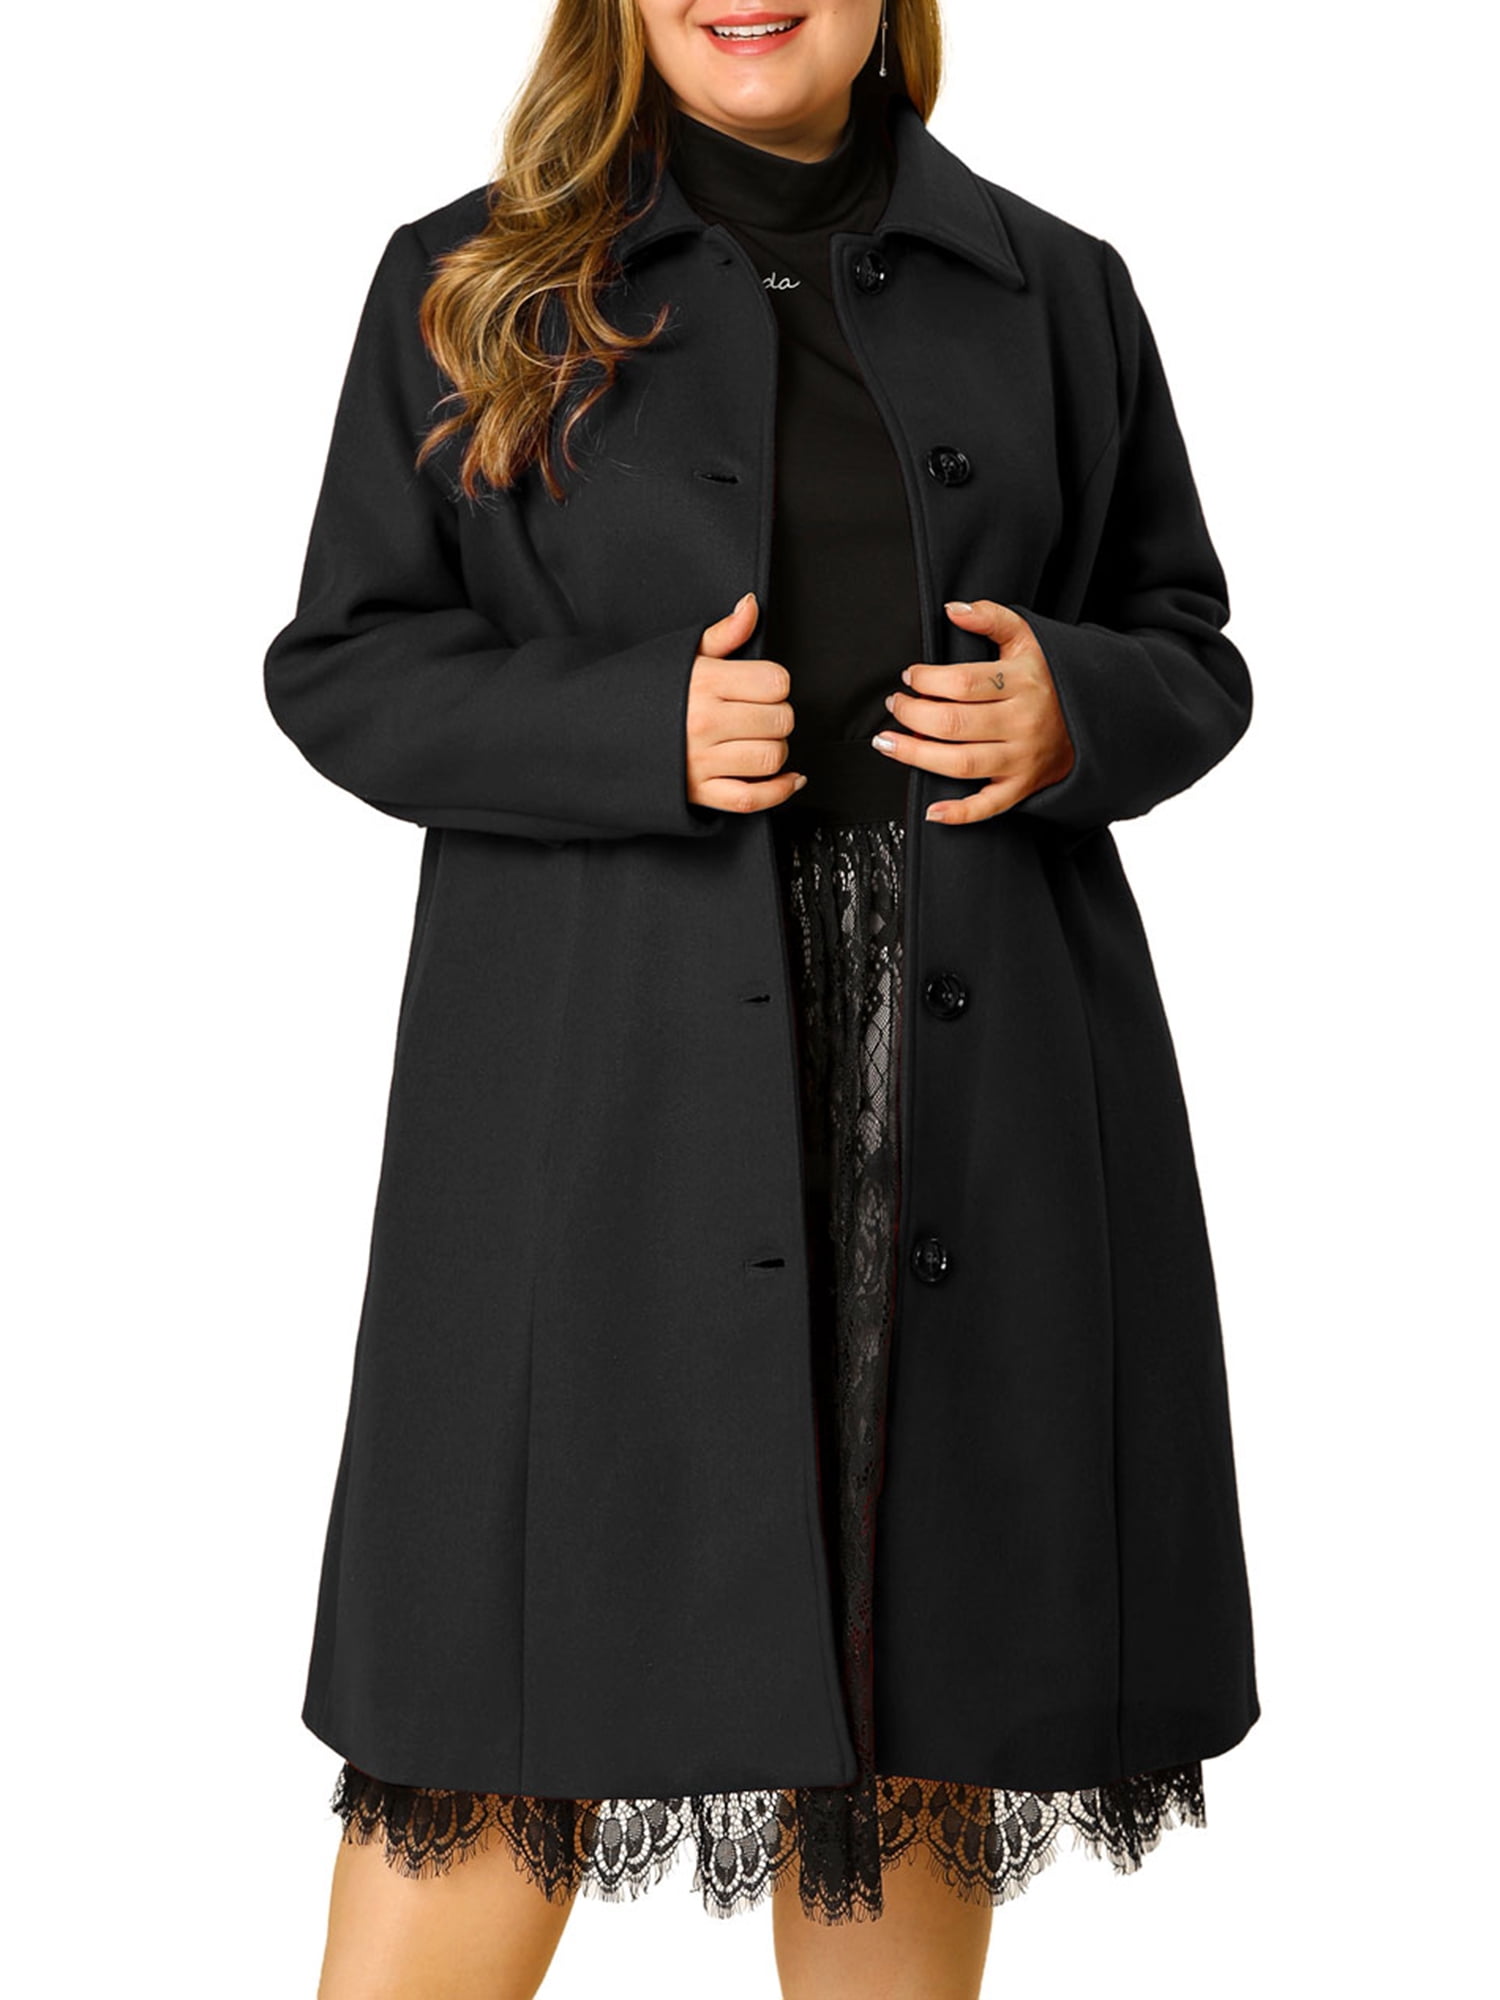 Unique Bargains Women's Plus Size PeaCoat Long Sleeve Utility Overcoat ...